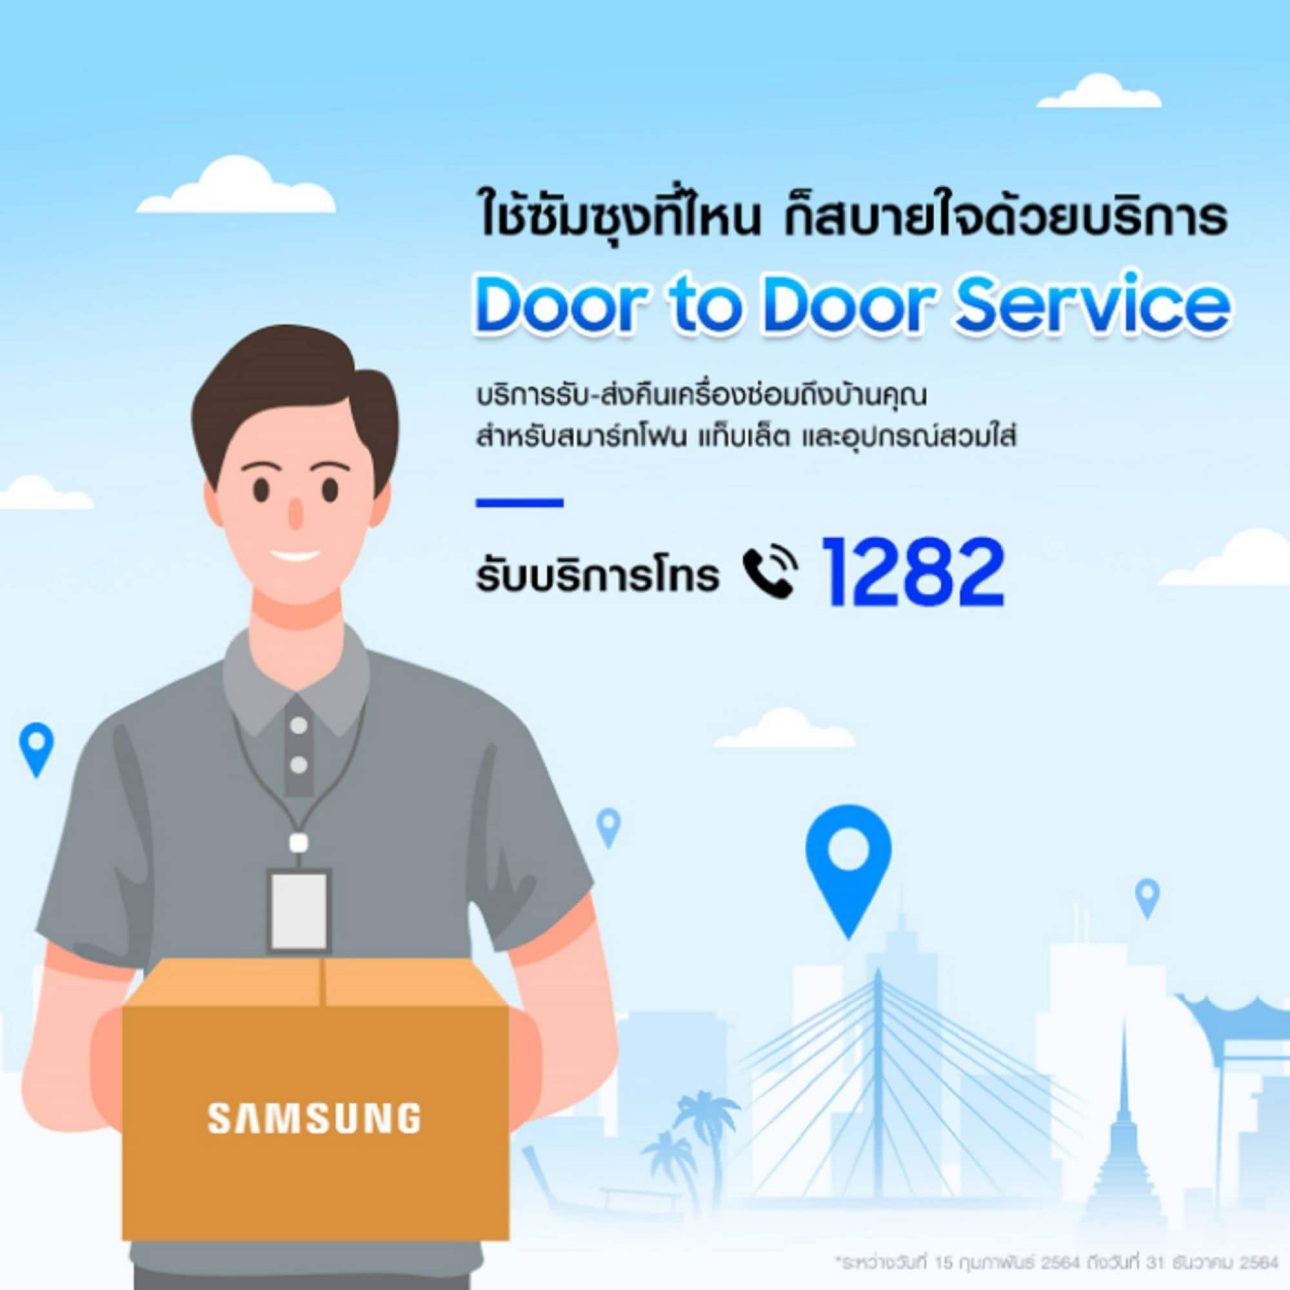 อยู่บ้านก็ช้อปได้! ซัมซุงแนะนำบริการใหม่ ‘ส่งฟรี ติดตั้งฟรี ทั่วประเทศ’ พร้อมคุมเข้มด้านความสะอาด เมื่อซื้อผ่าน Samsung.com เท่านั้น 9